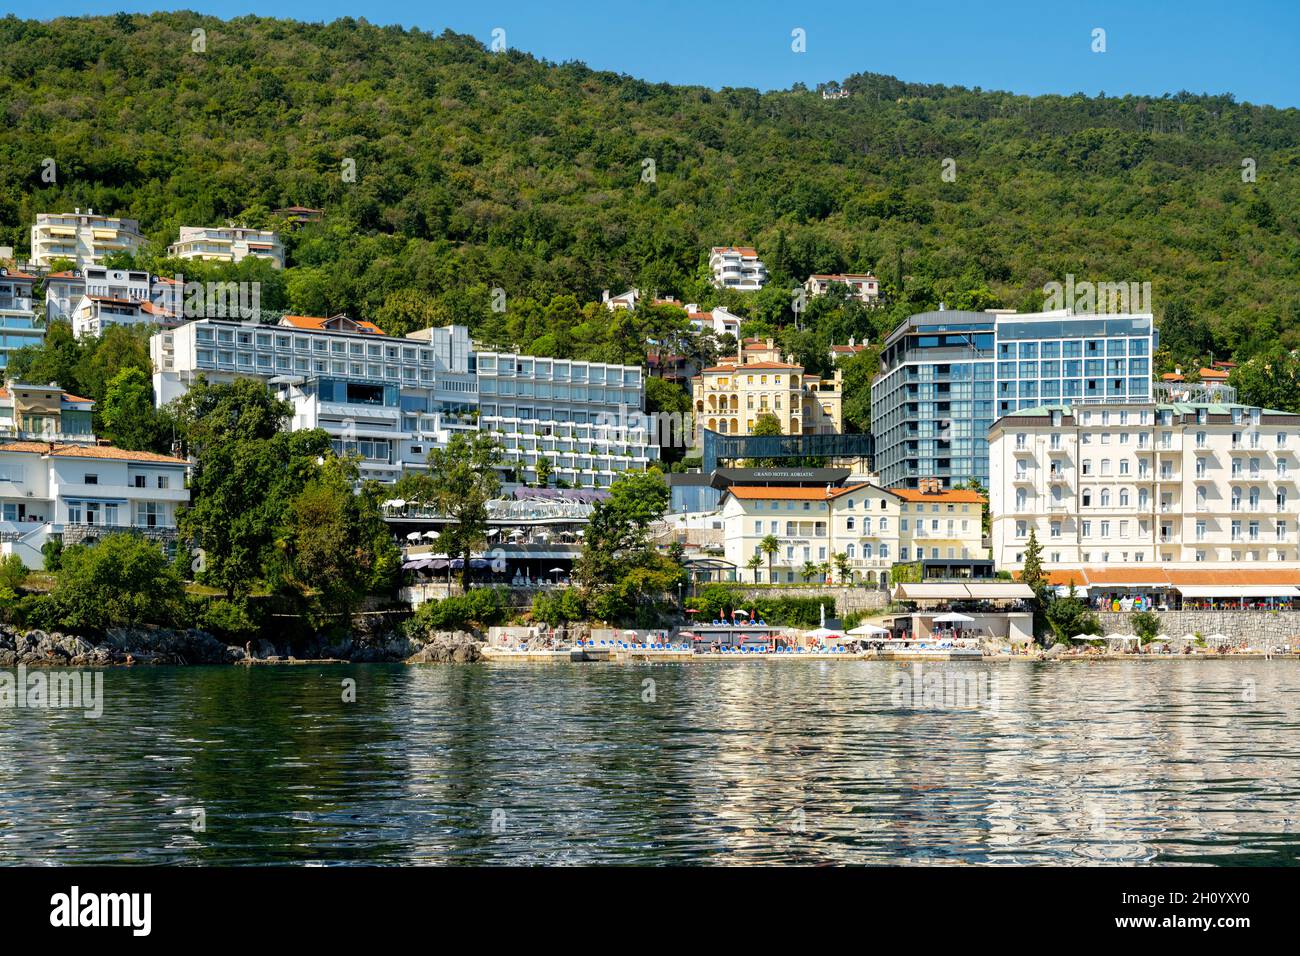 Kroatien, Istrien, Opatija, Links im Bild Modernes Appartmenthaus, daneben vorne das Hotel Domino und das Hotel Istra, dahinter der moderne Bau des G. Foto Stock